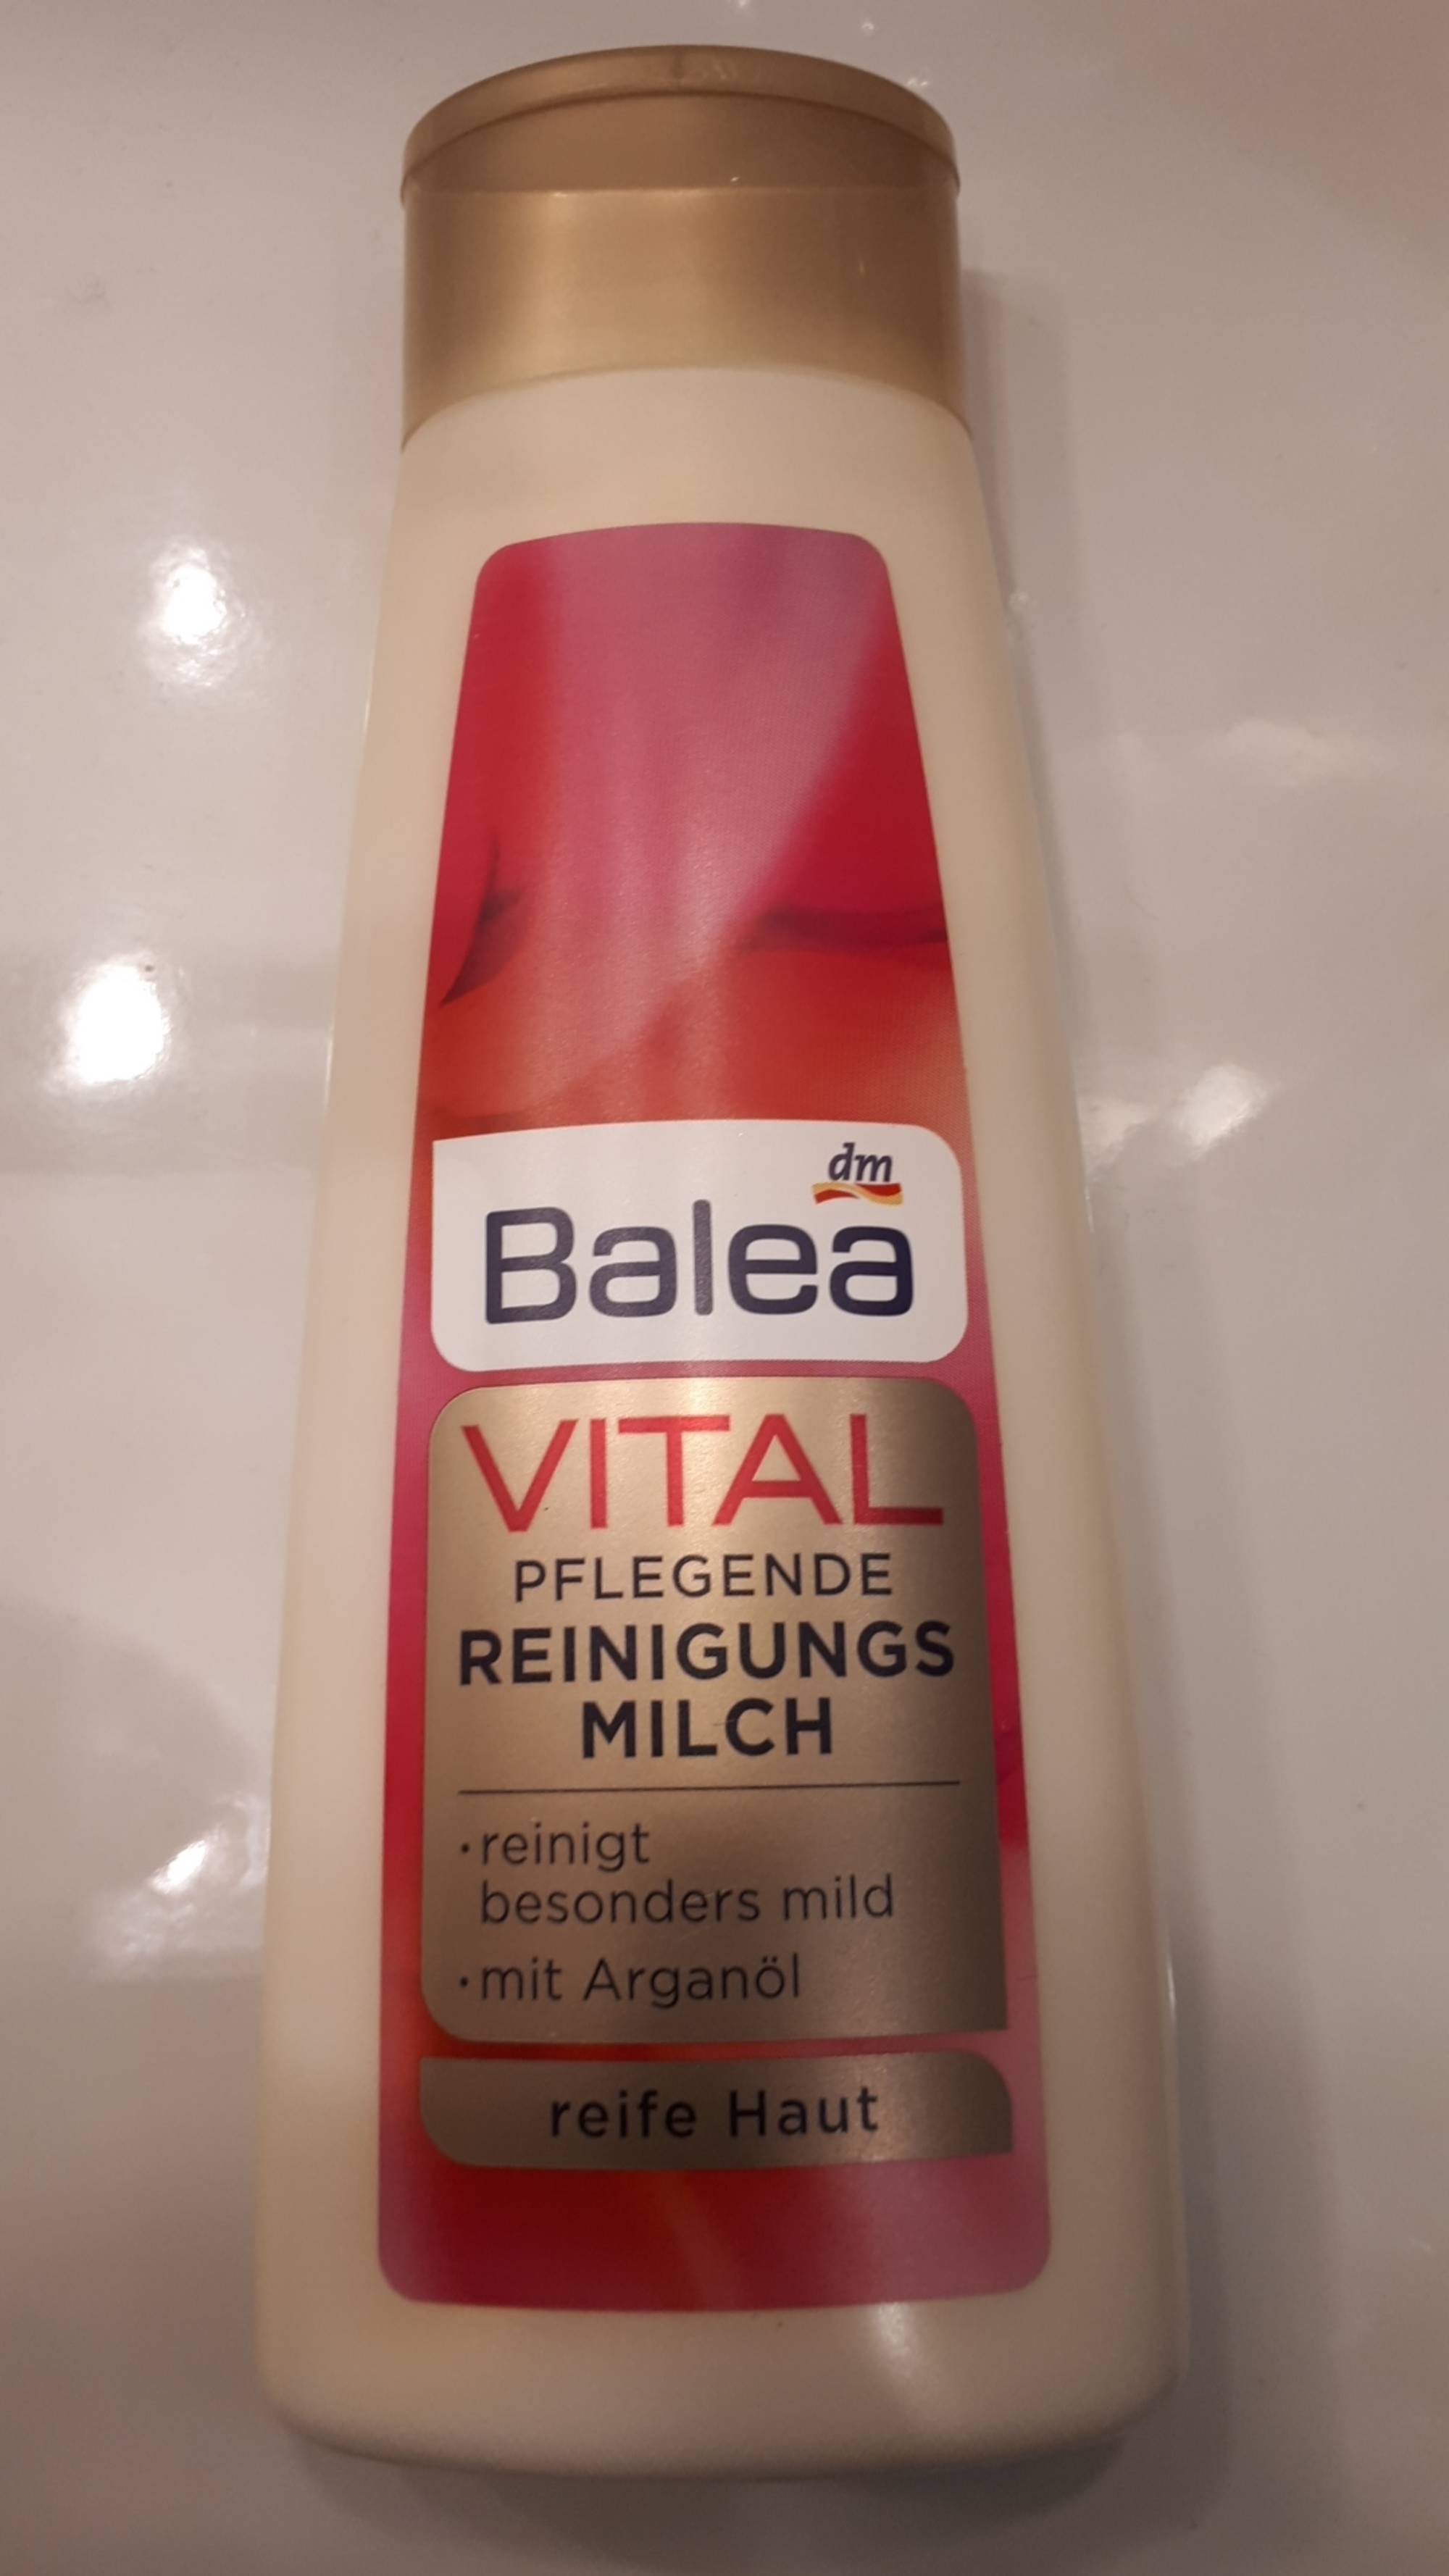 BALEA - Vital - Pflegende reinigungs milch